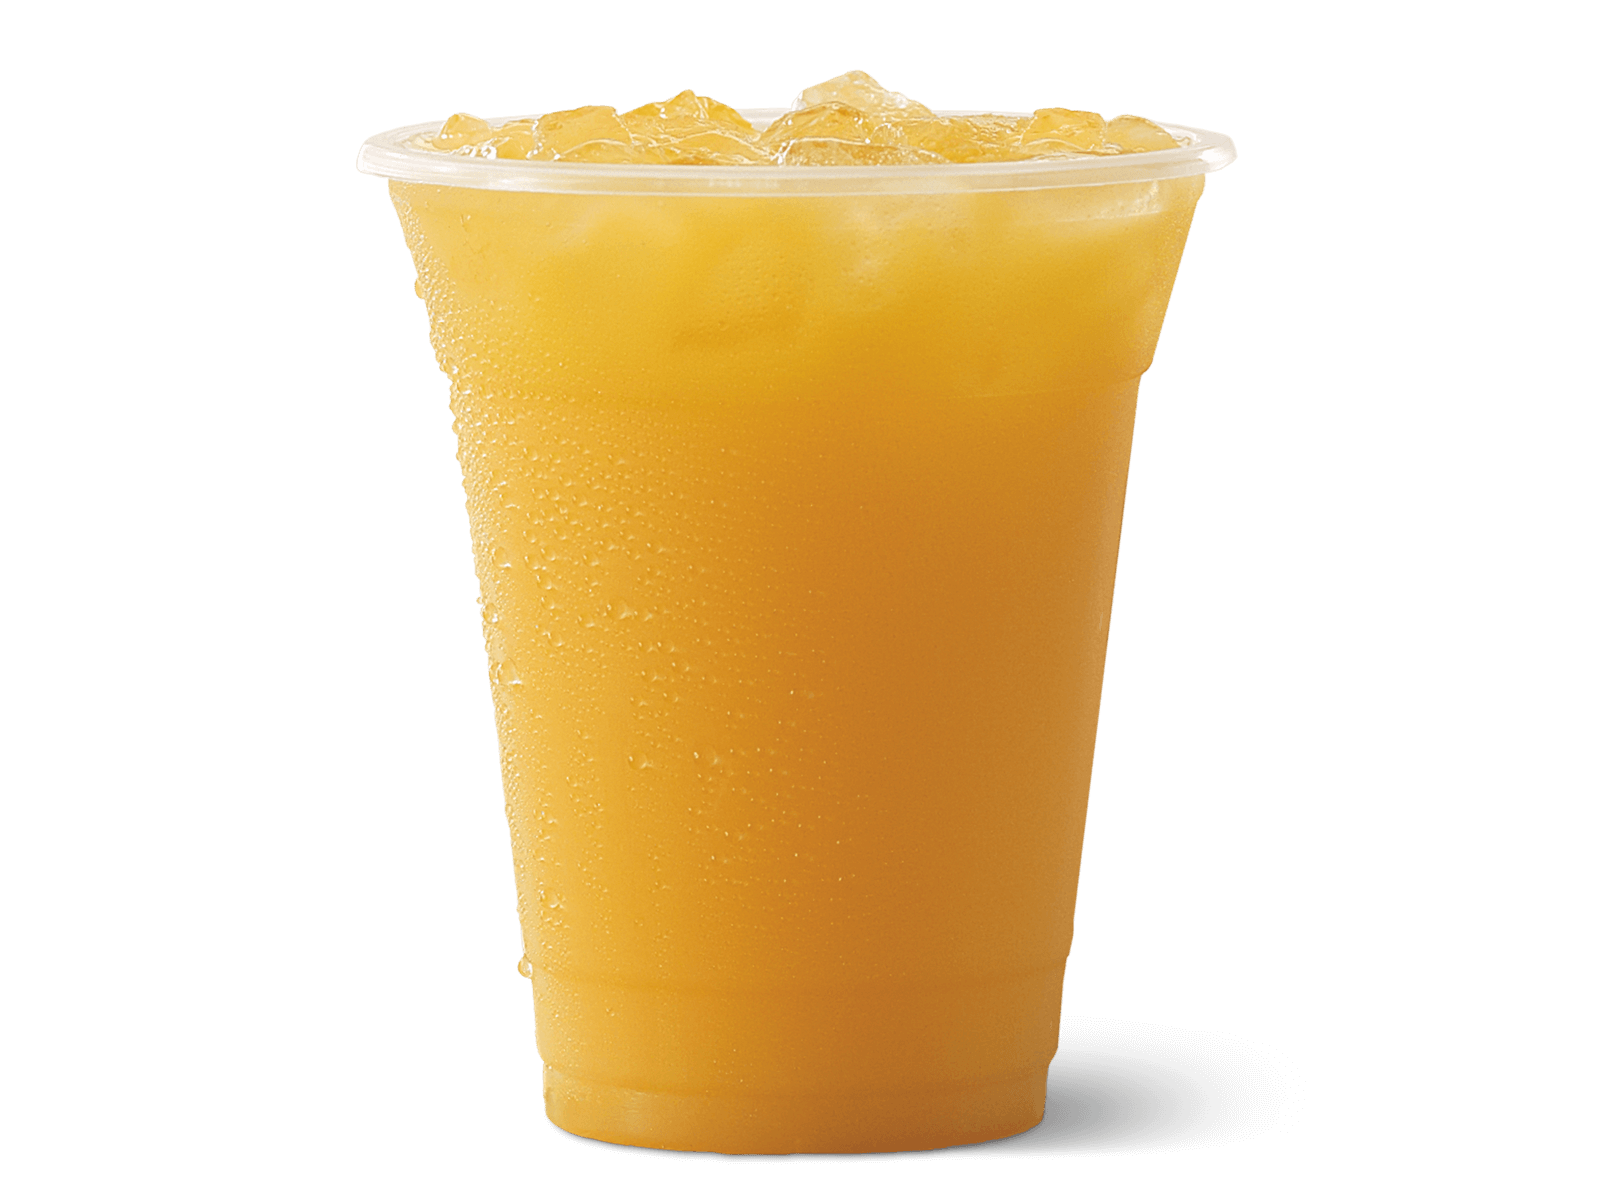 Orange Fruit Drink